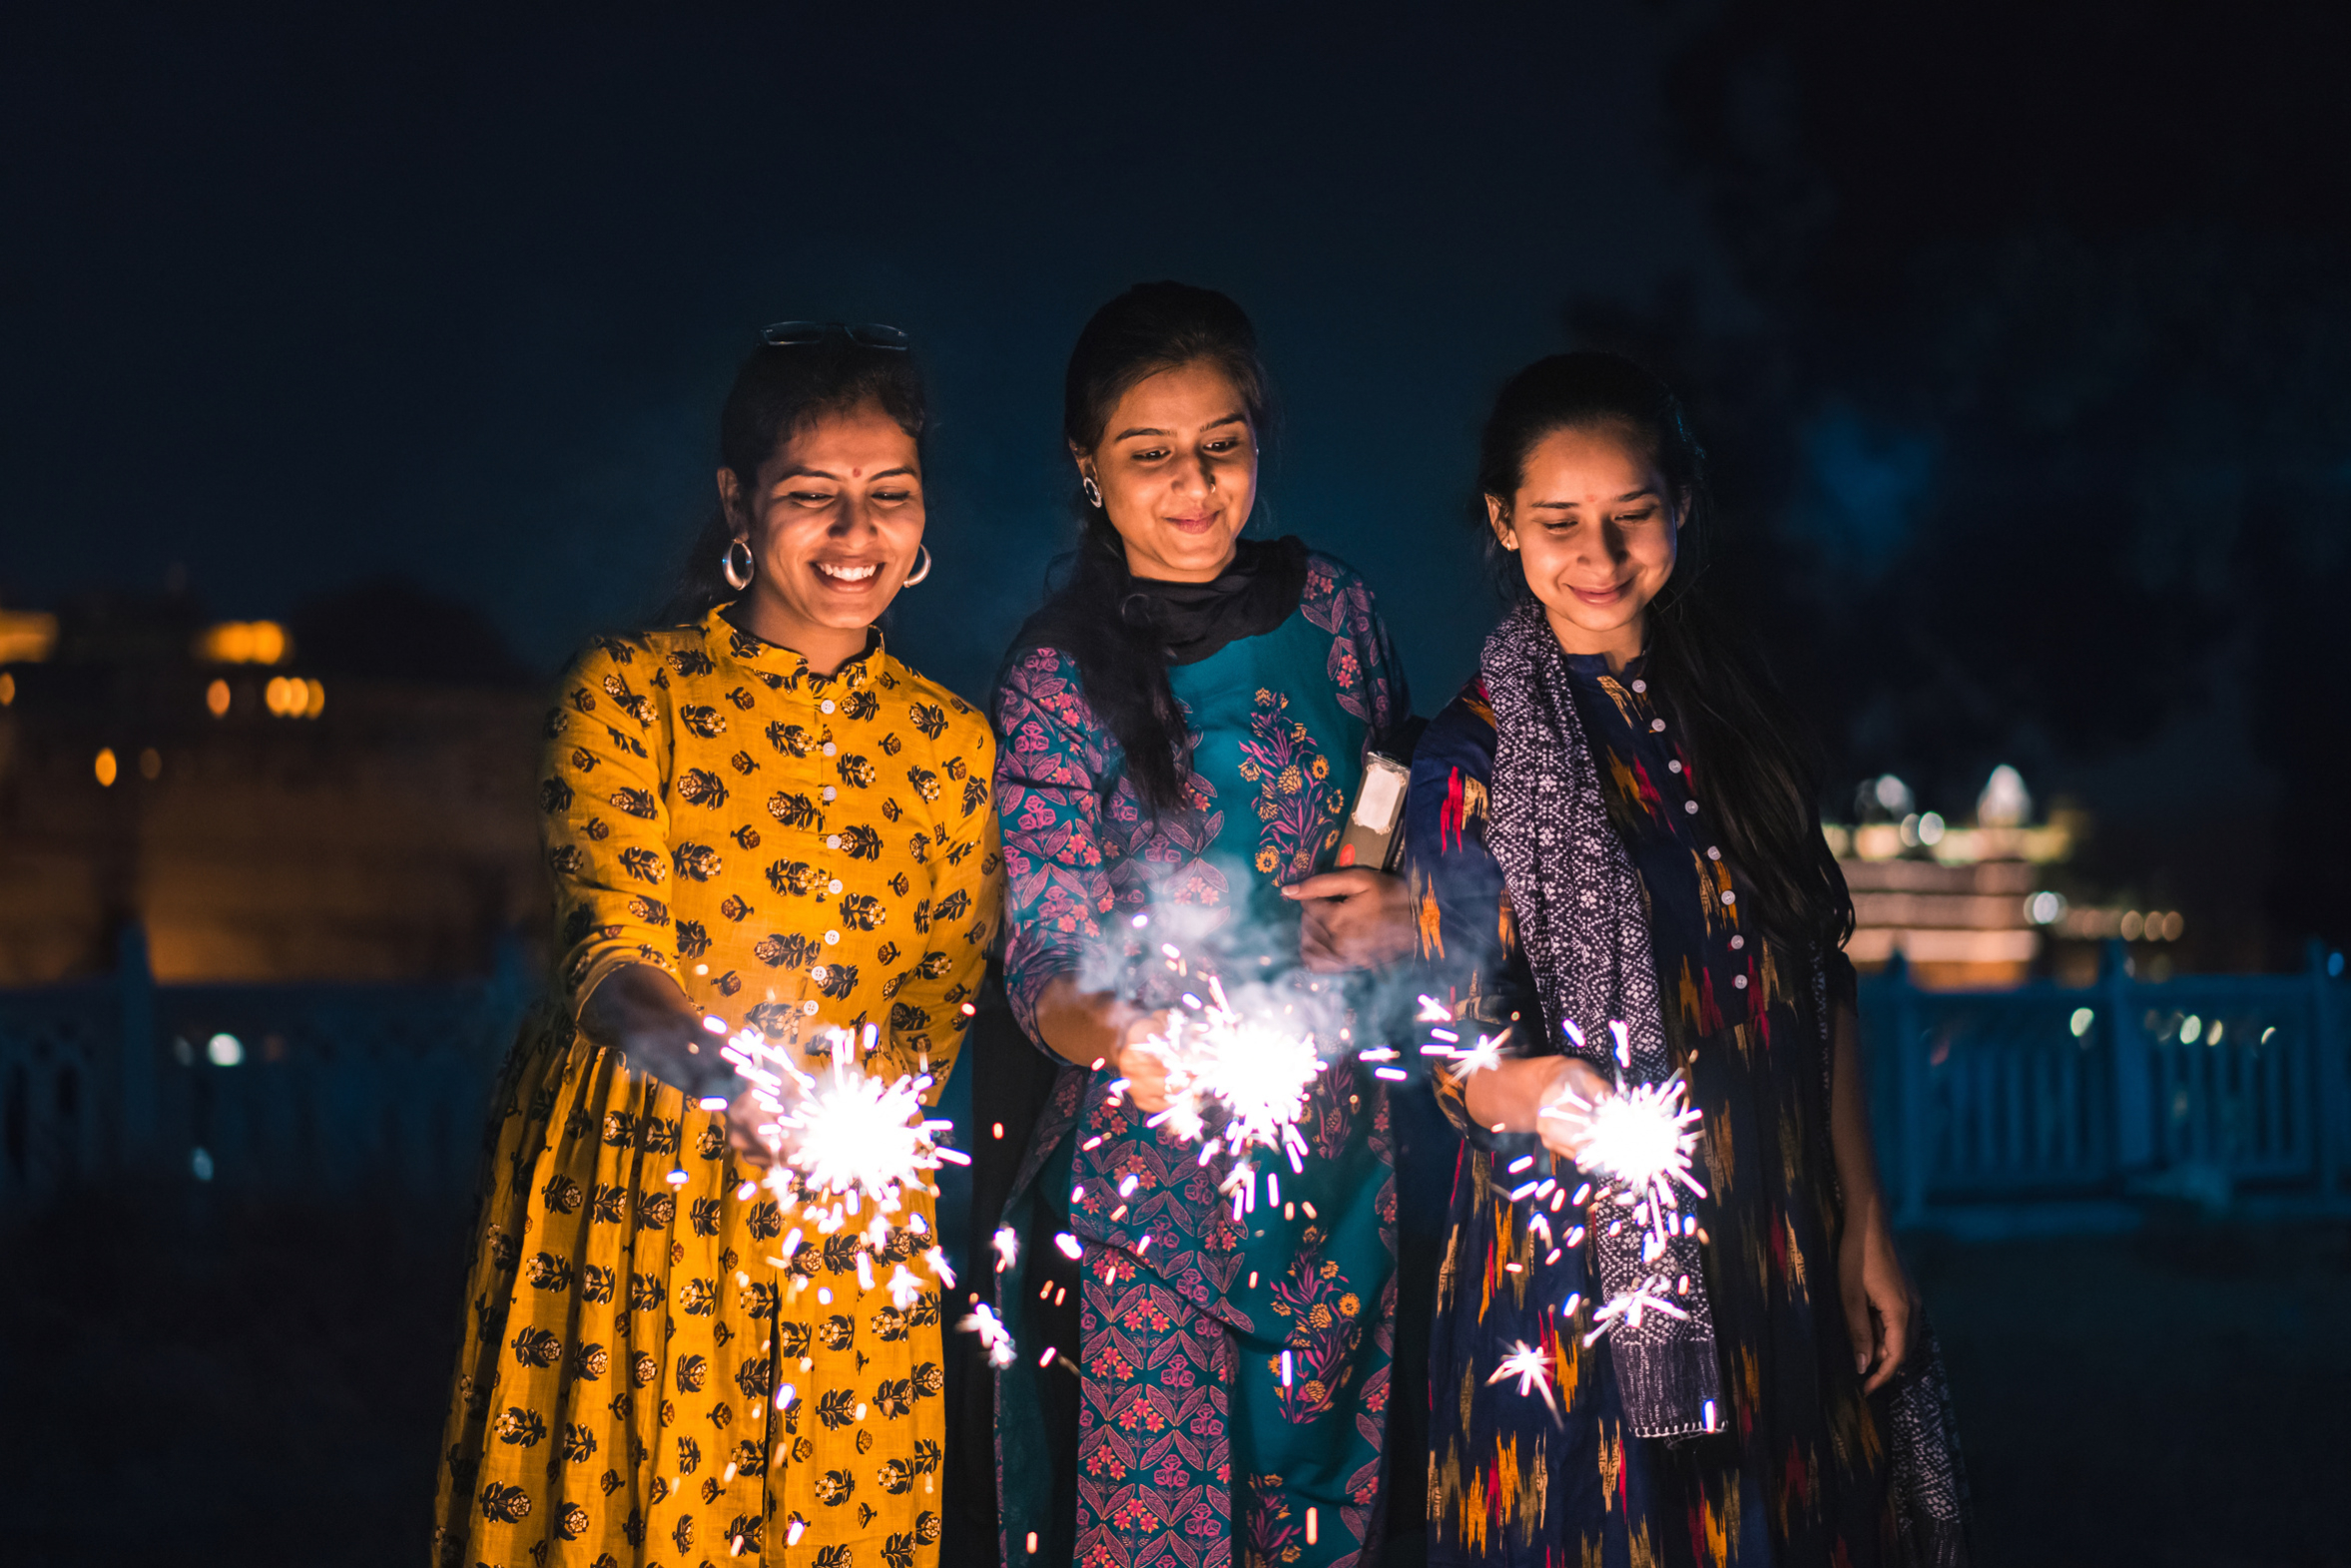 diwali celebrations with sparklers